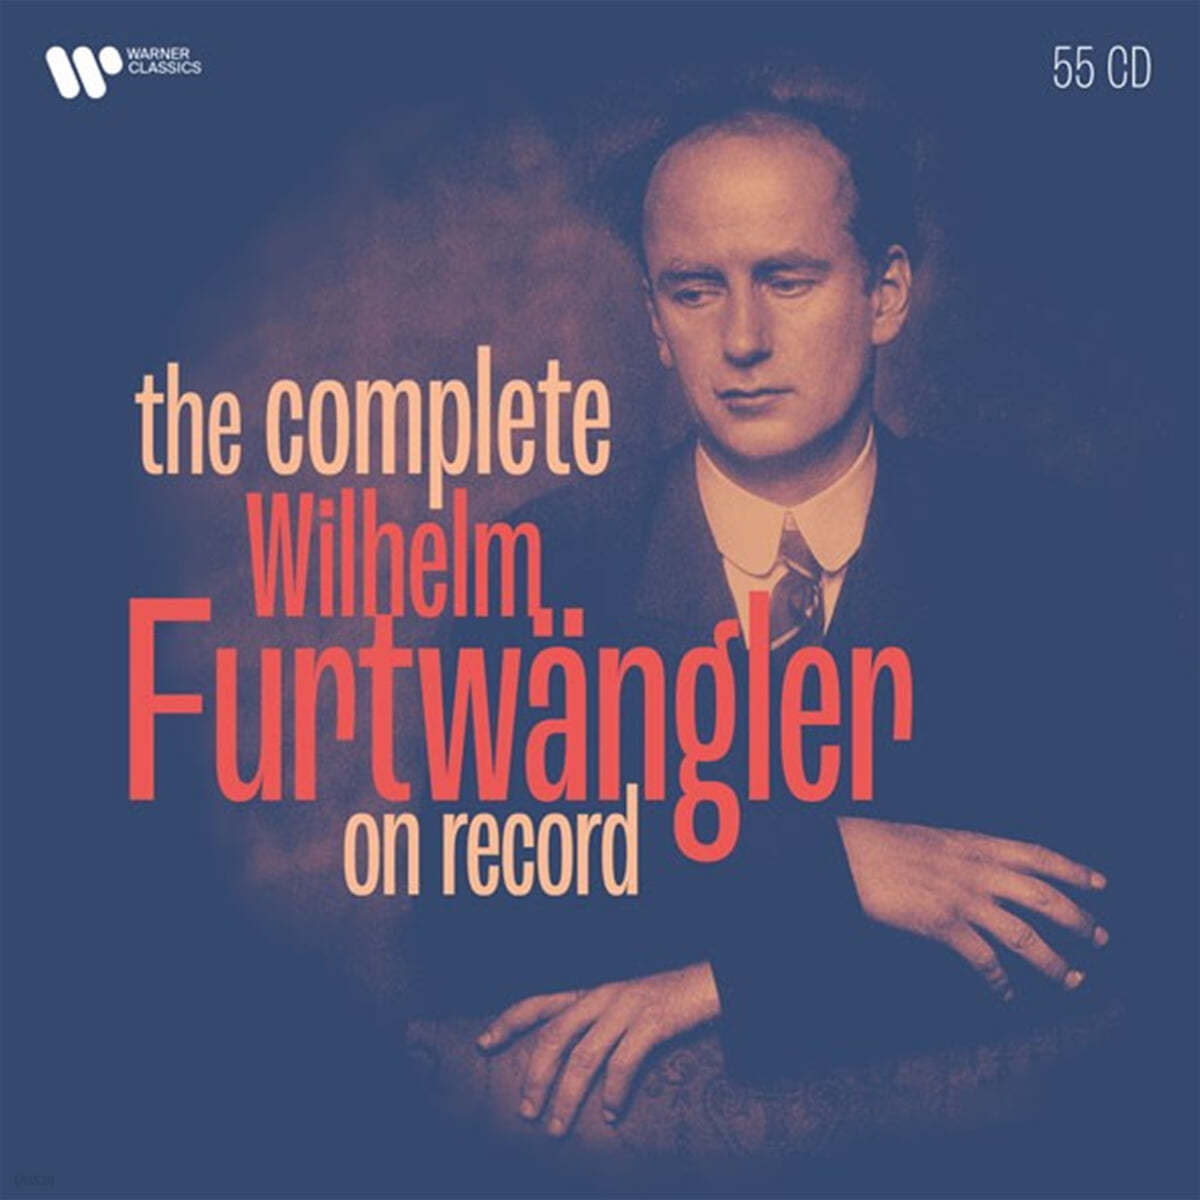 빌헬름 푸르트벵글러 스튜디오 녹음 전집 (Wilhelm Furtwangler - The Complete Furtwangler on Record) 